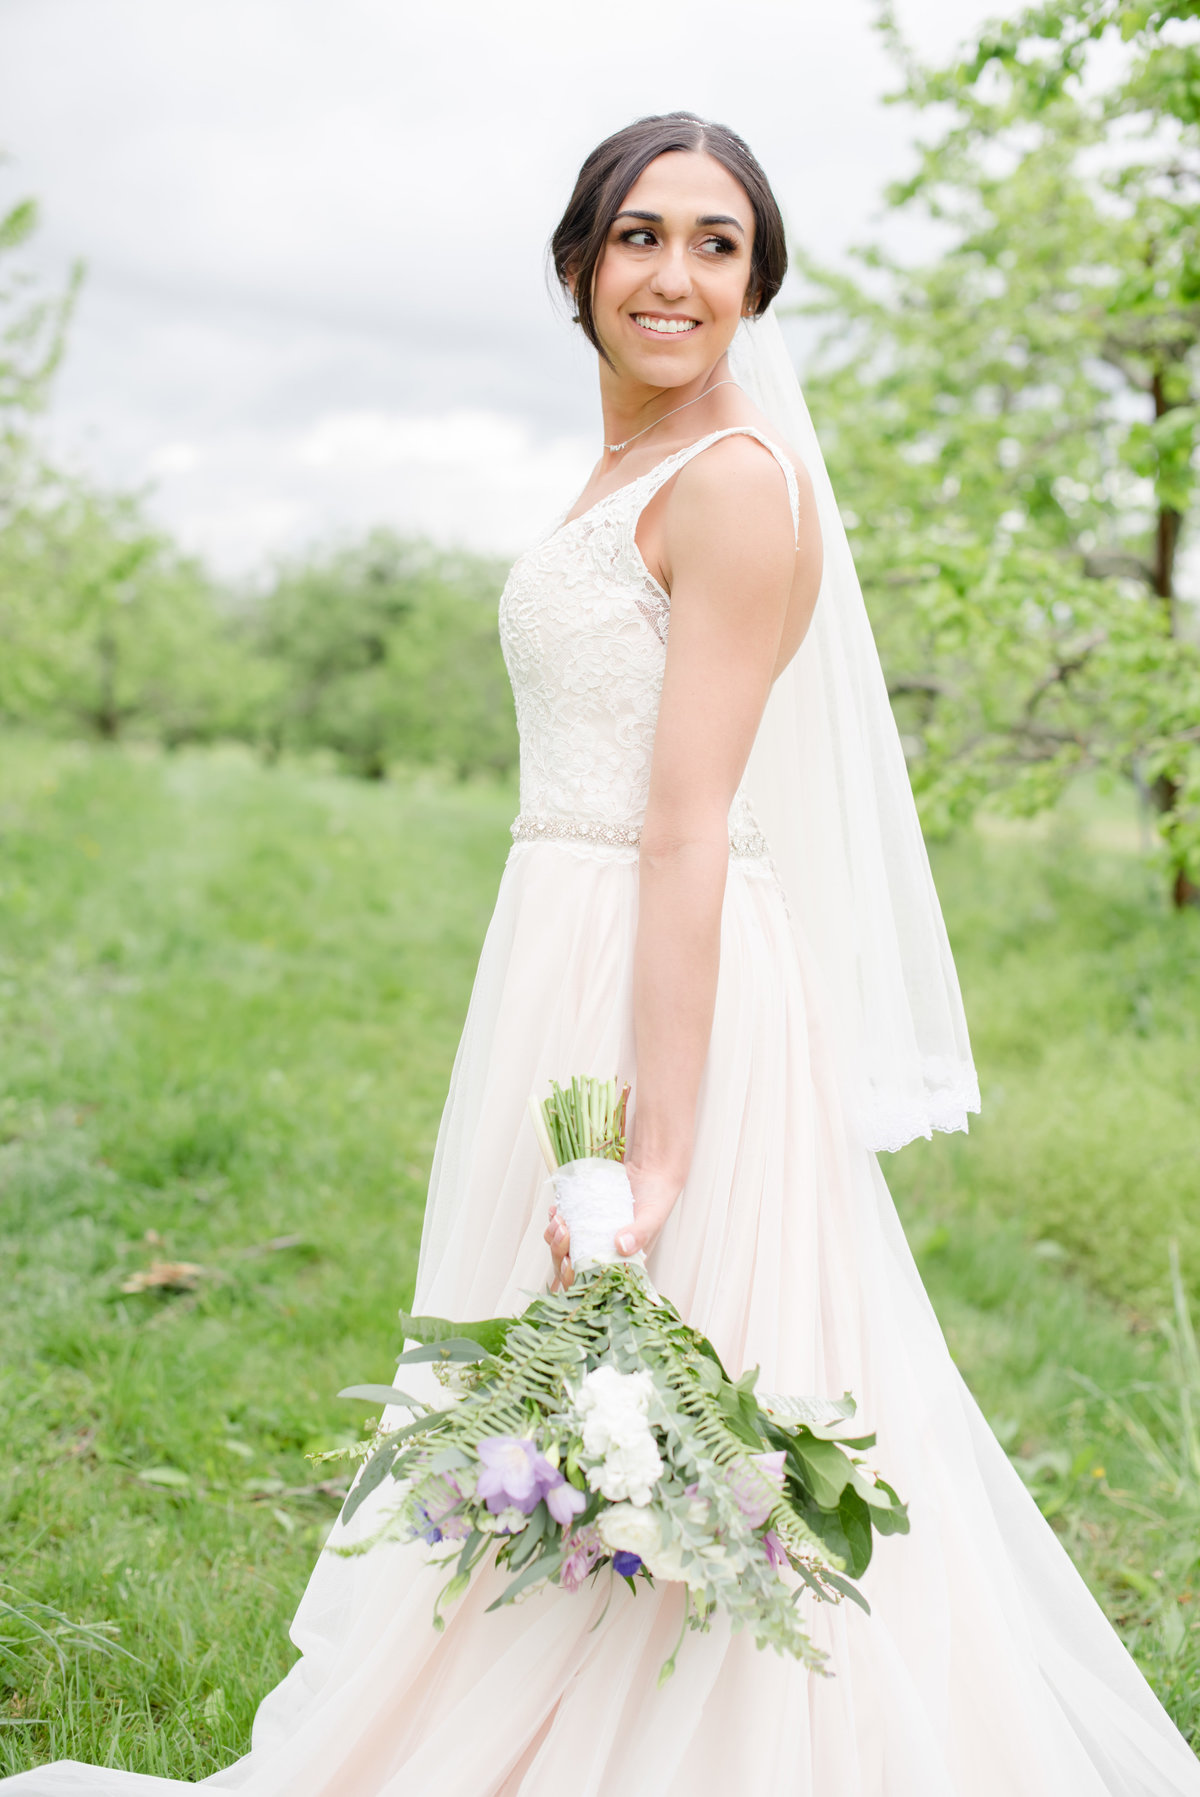 Rustic Barn Wedding Pennsylvania-Rodale Institute Wedding Raquel and Daniel Wedding 23088-44